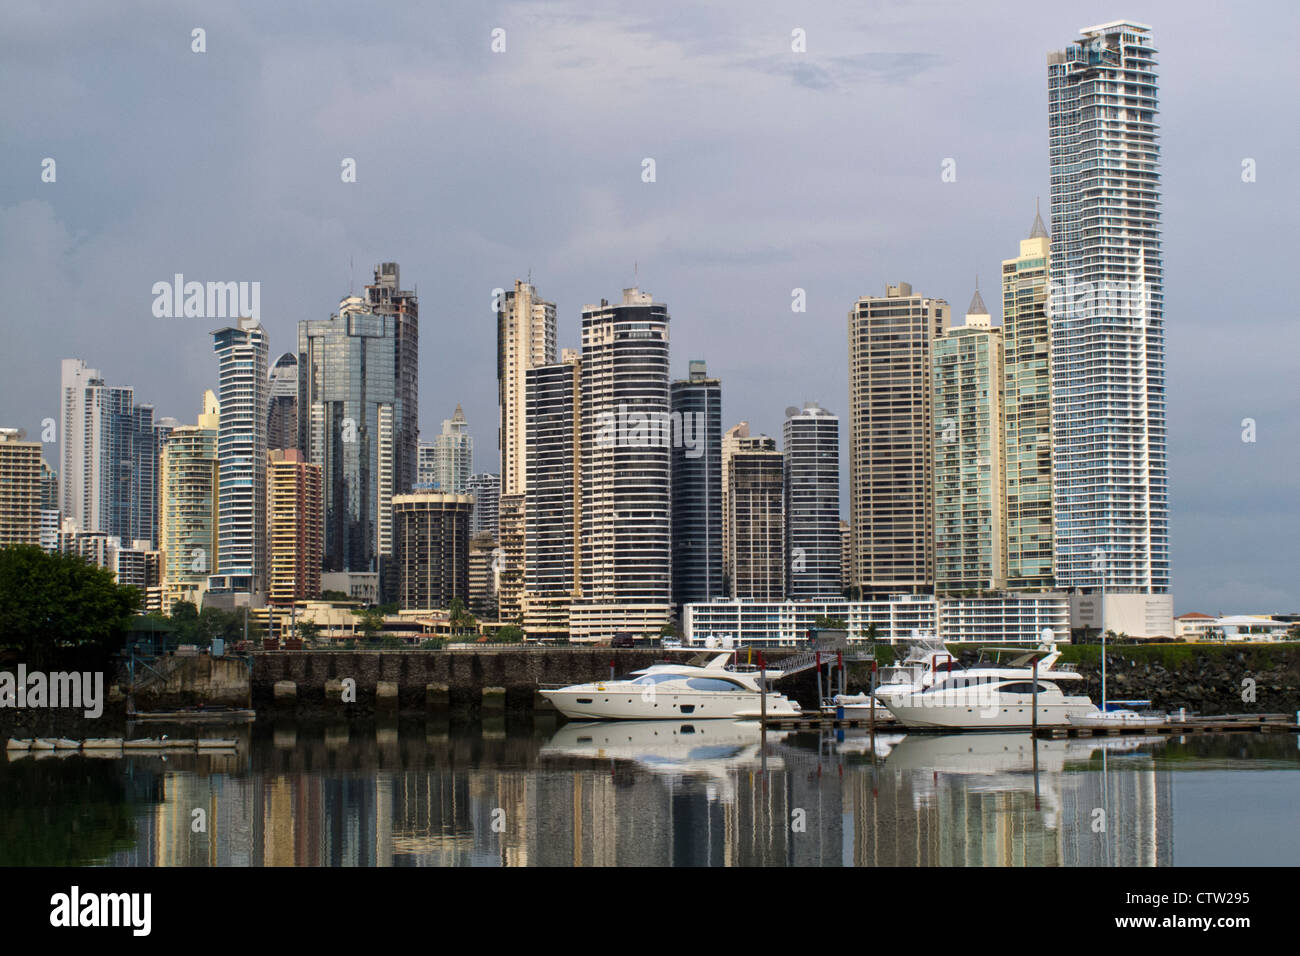 Vista general del rascacielos / skyline con bay / vista al agua y los barcos, Ciudad de Panamá, Panamá Foto de stock